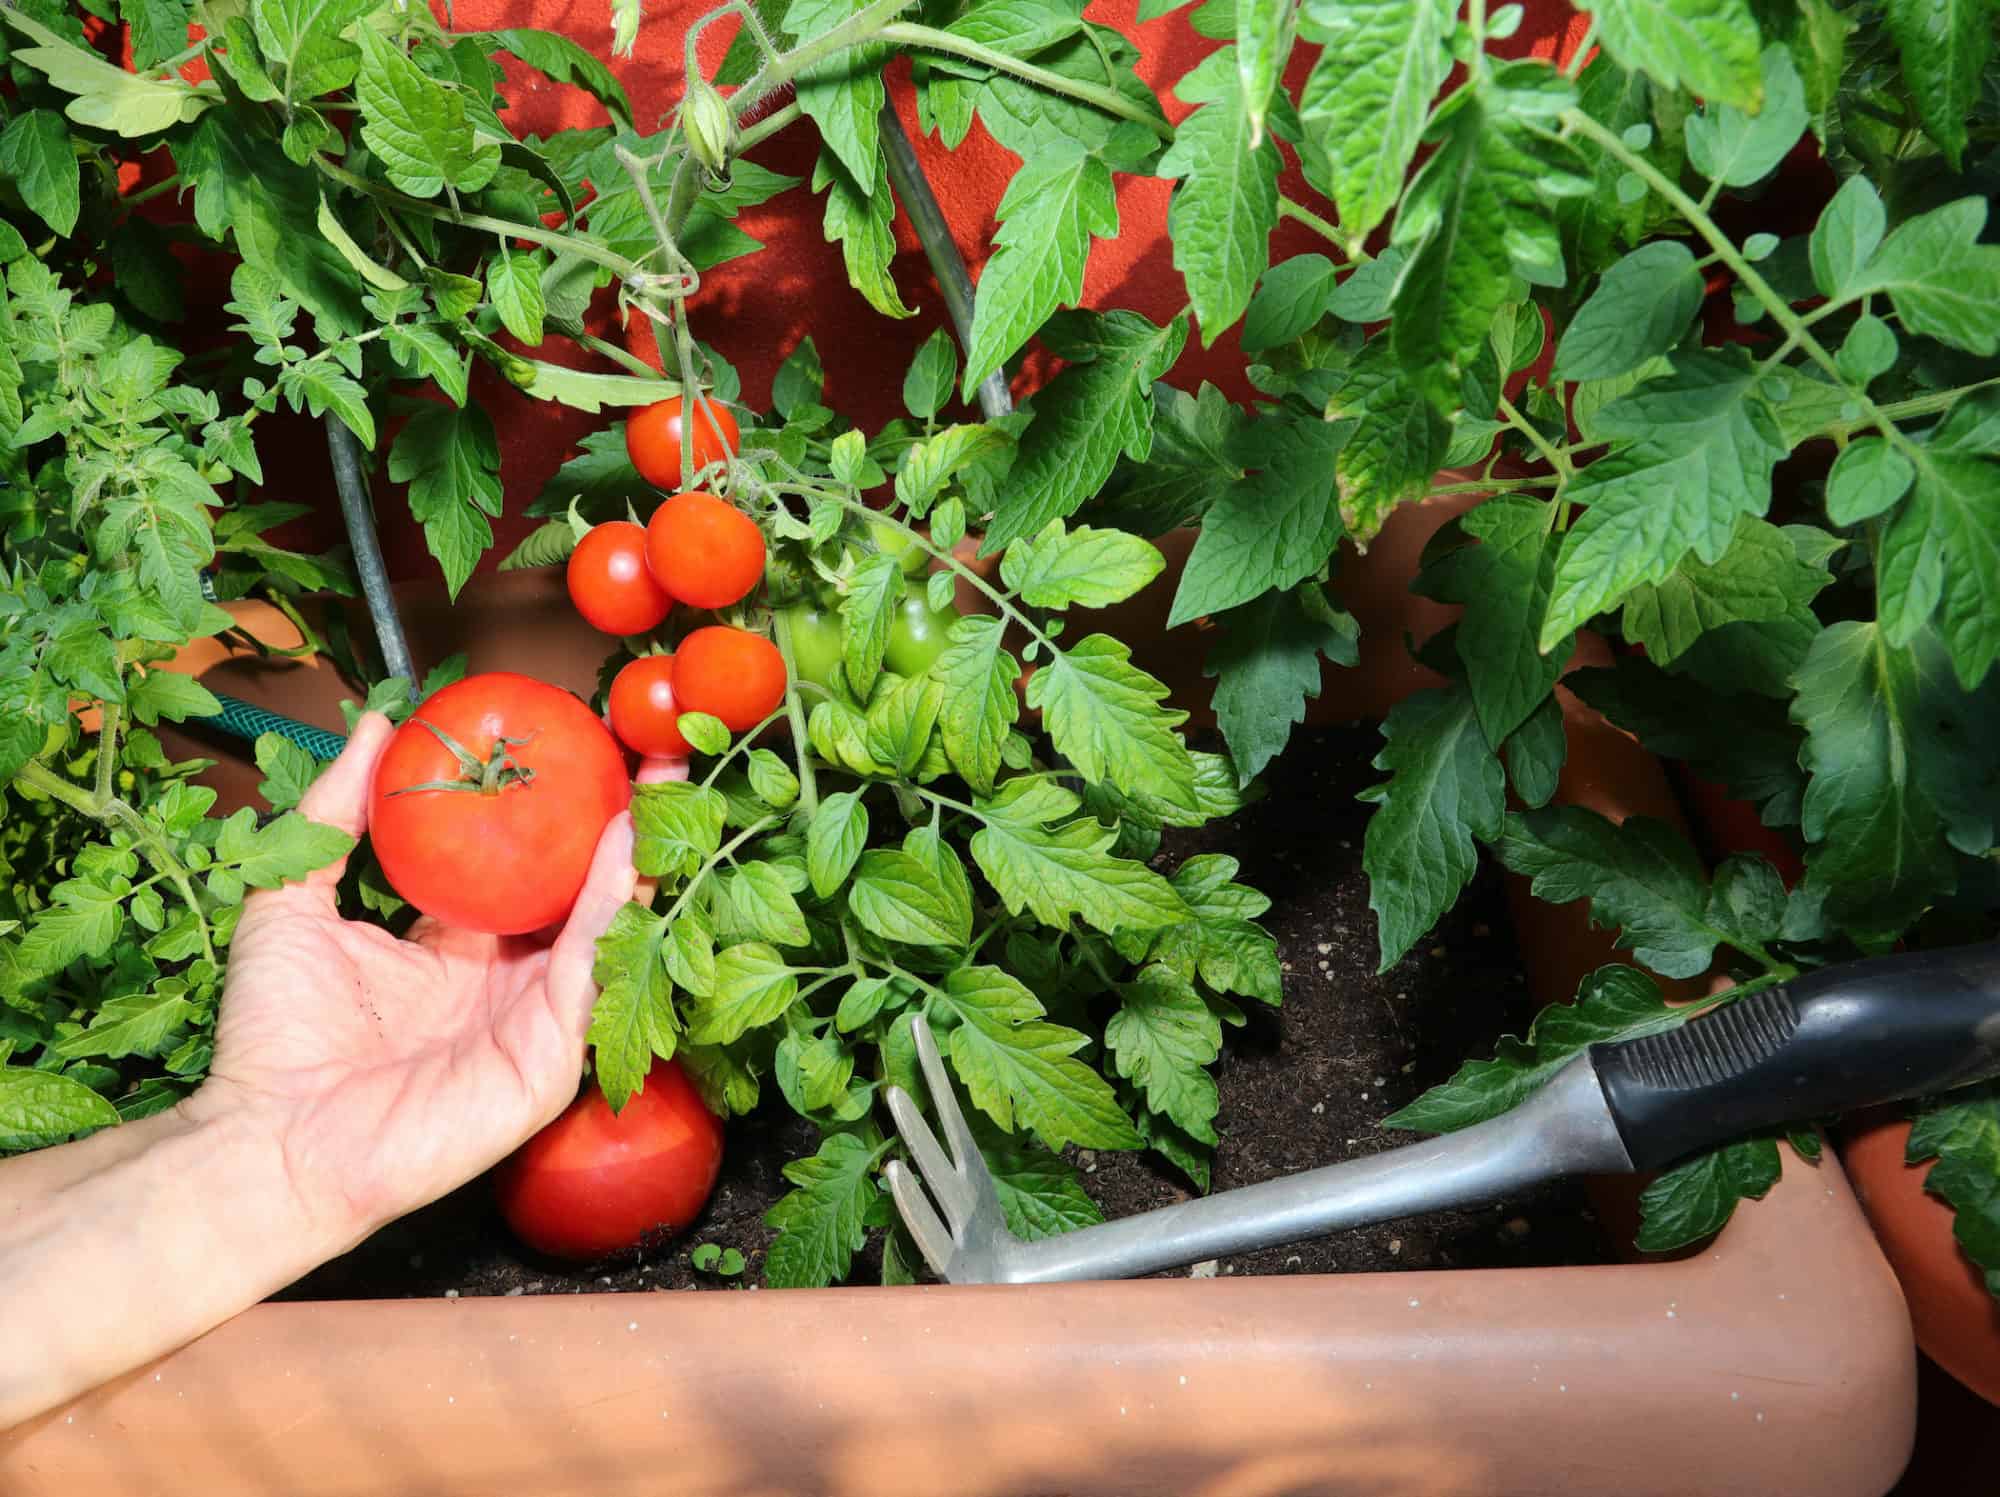 Hand holding tomato in urban garden